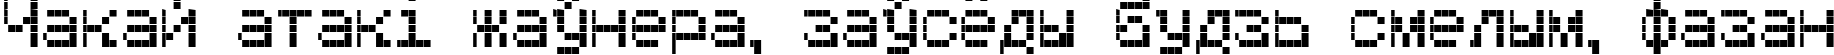 Пример написания шрифтом PoligonC текста на белорусском